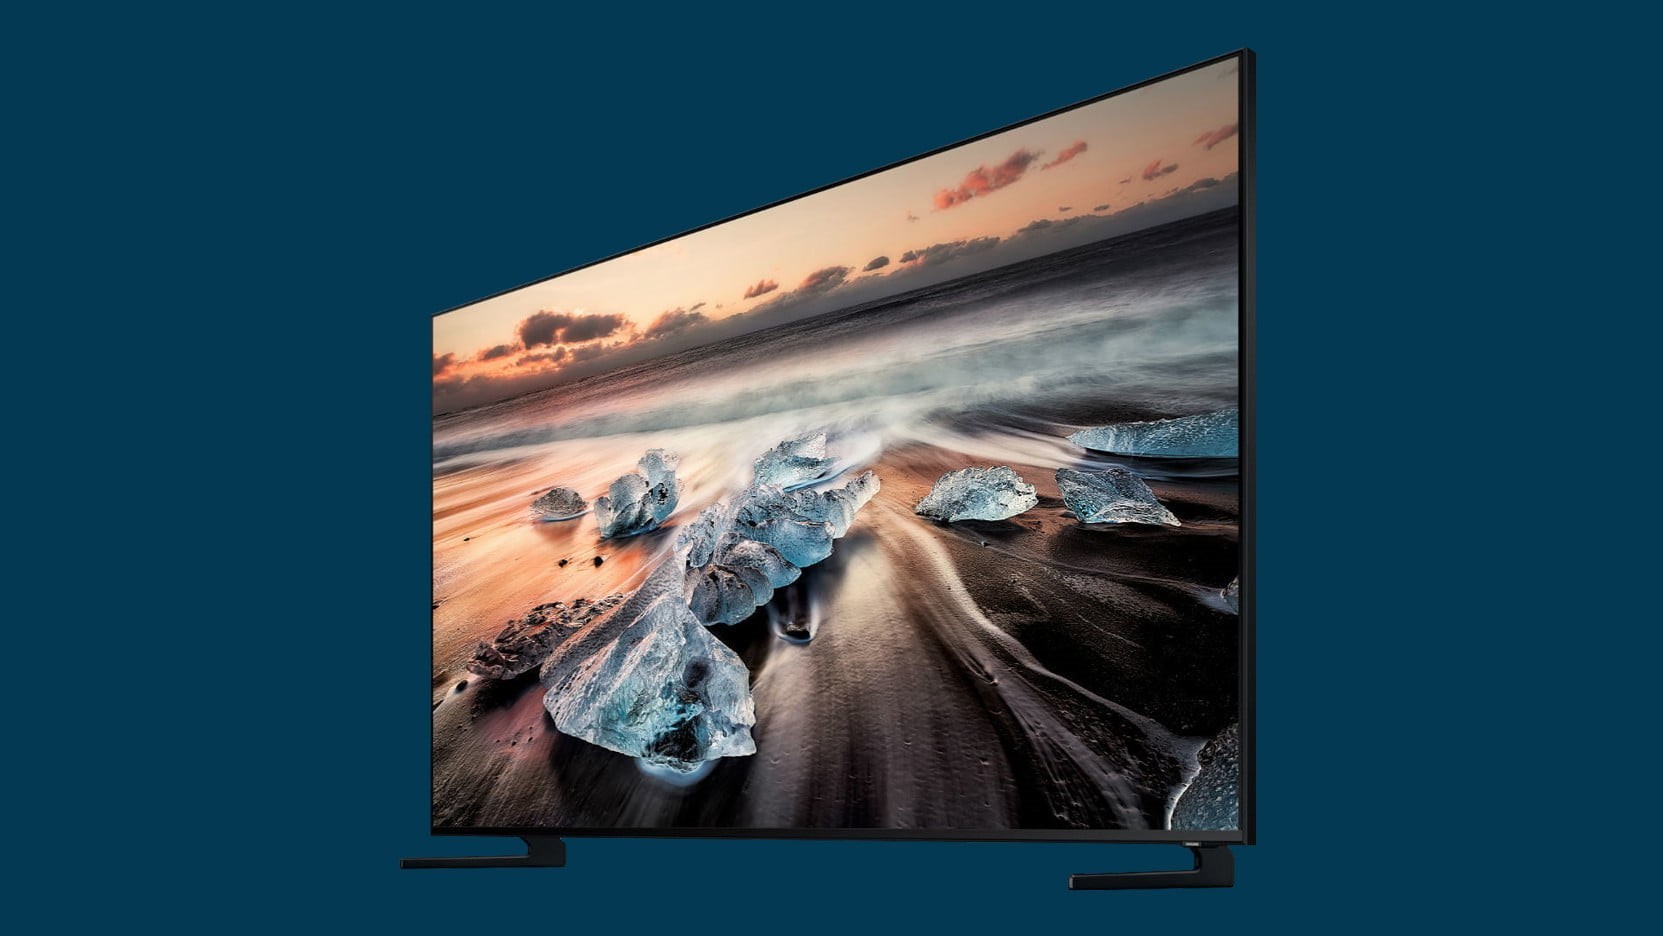 Первый QLED 8K TV от Samsung появится в магазинах в сентябре